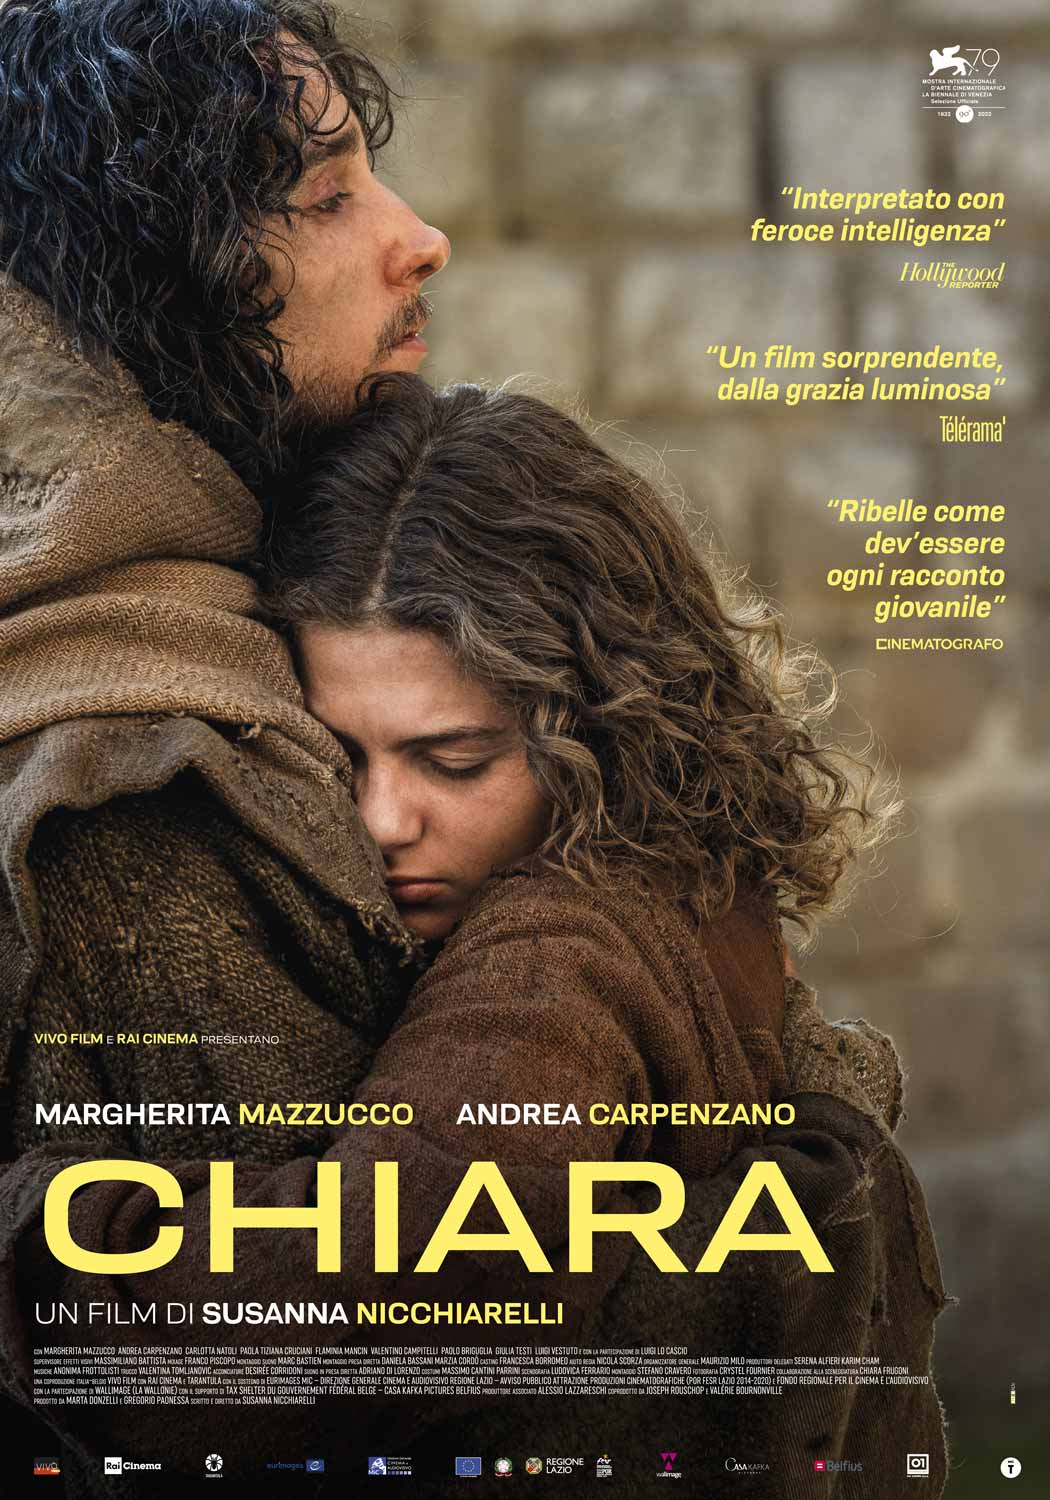 La locandina del film Chiara, di Susanna Nicchiarelli 